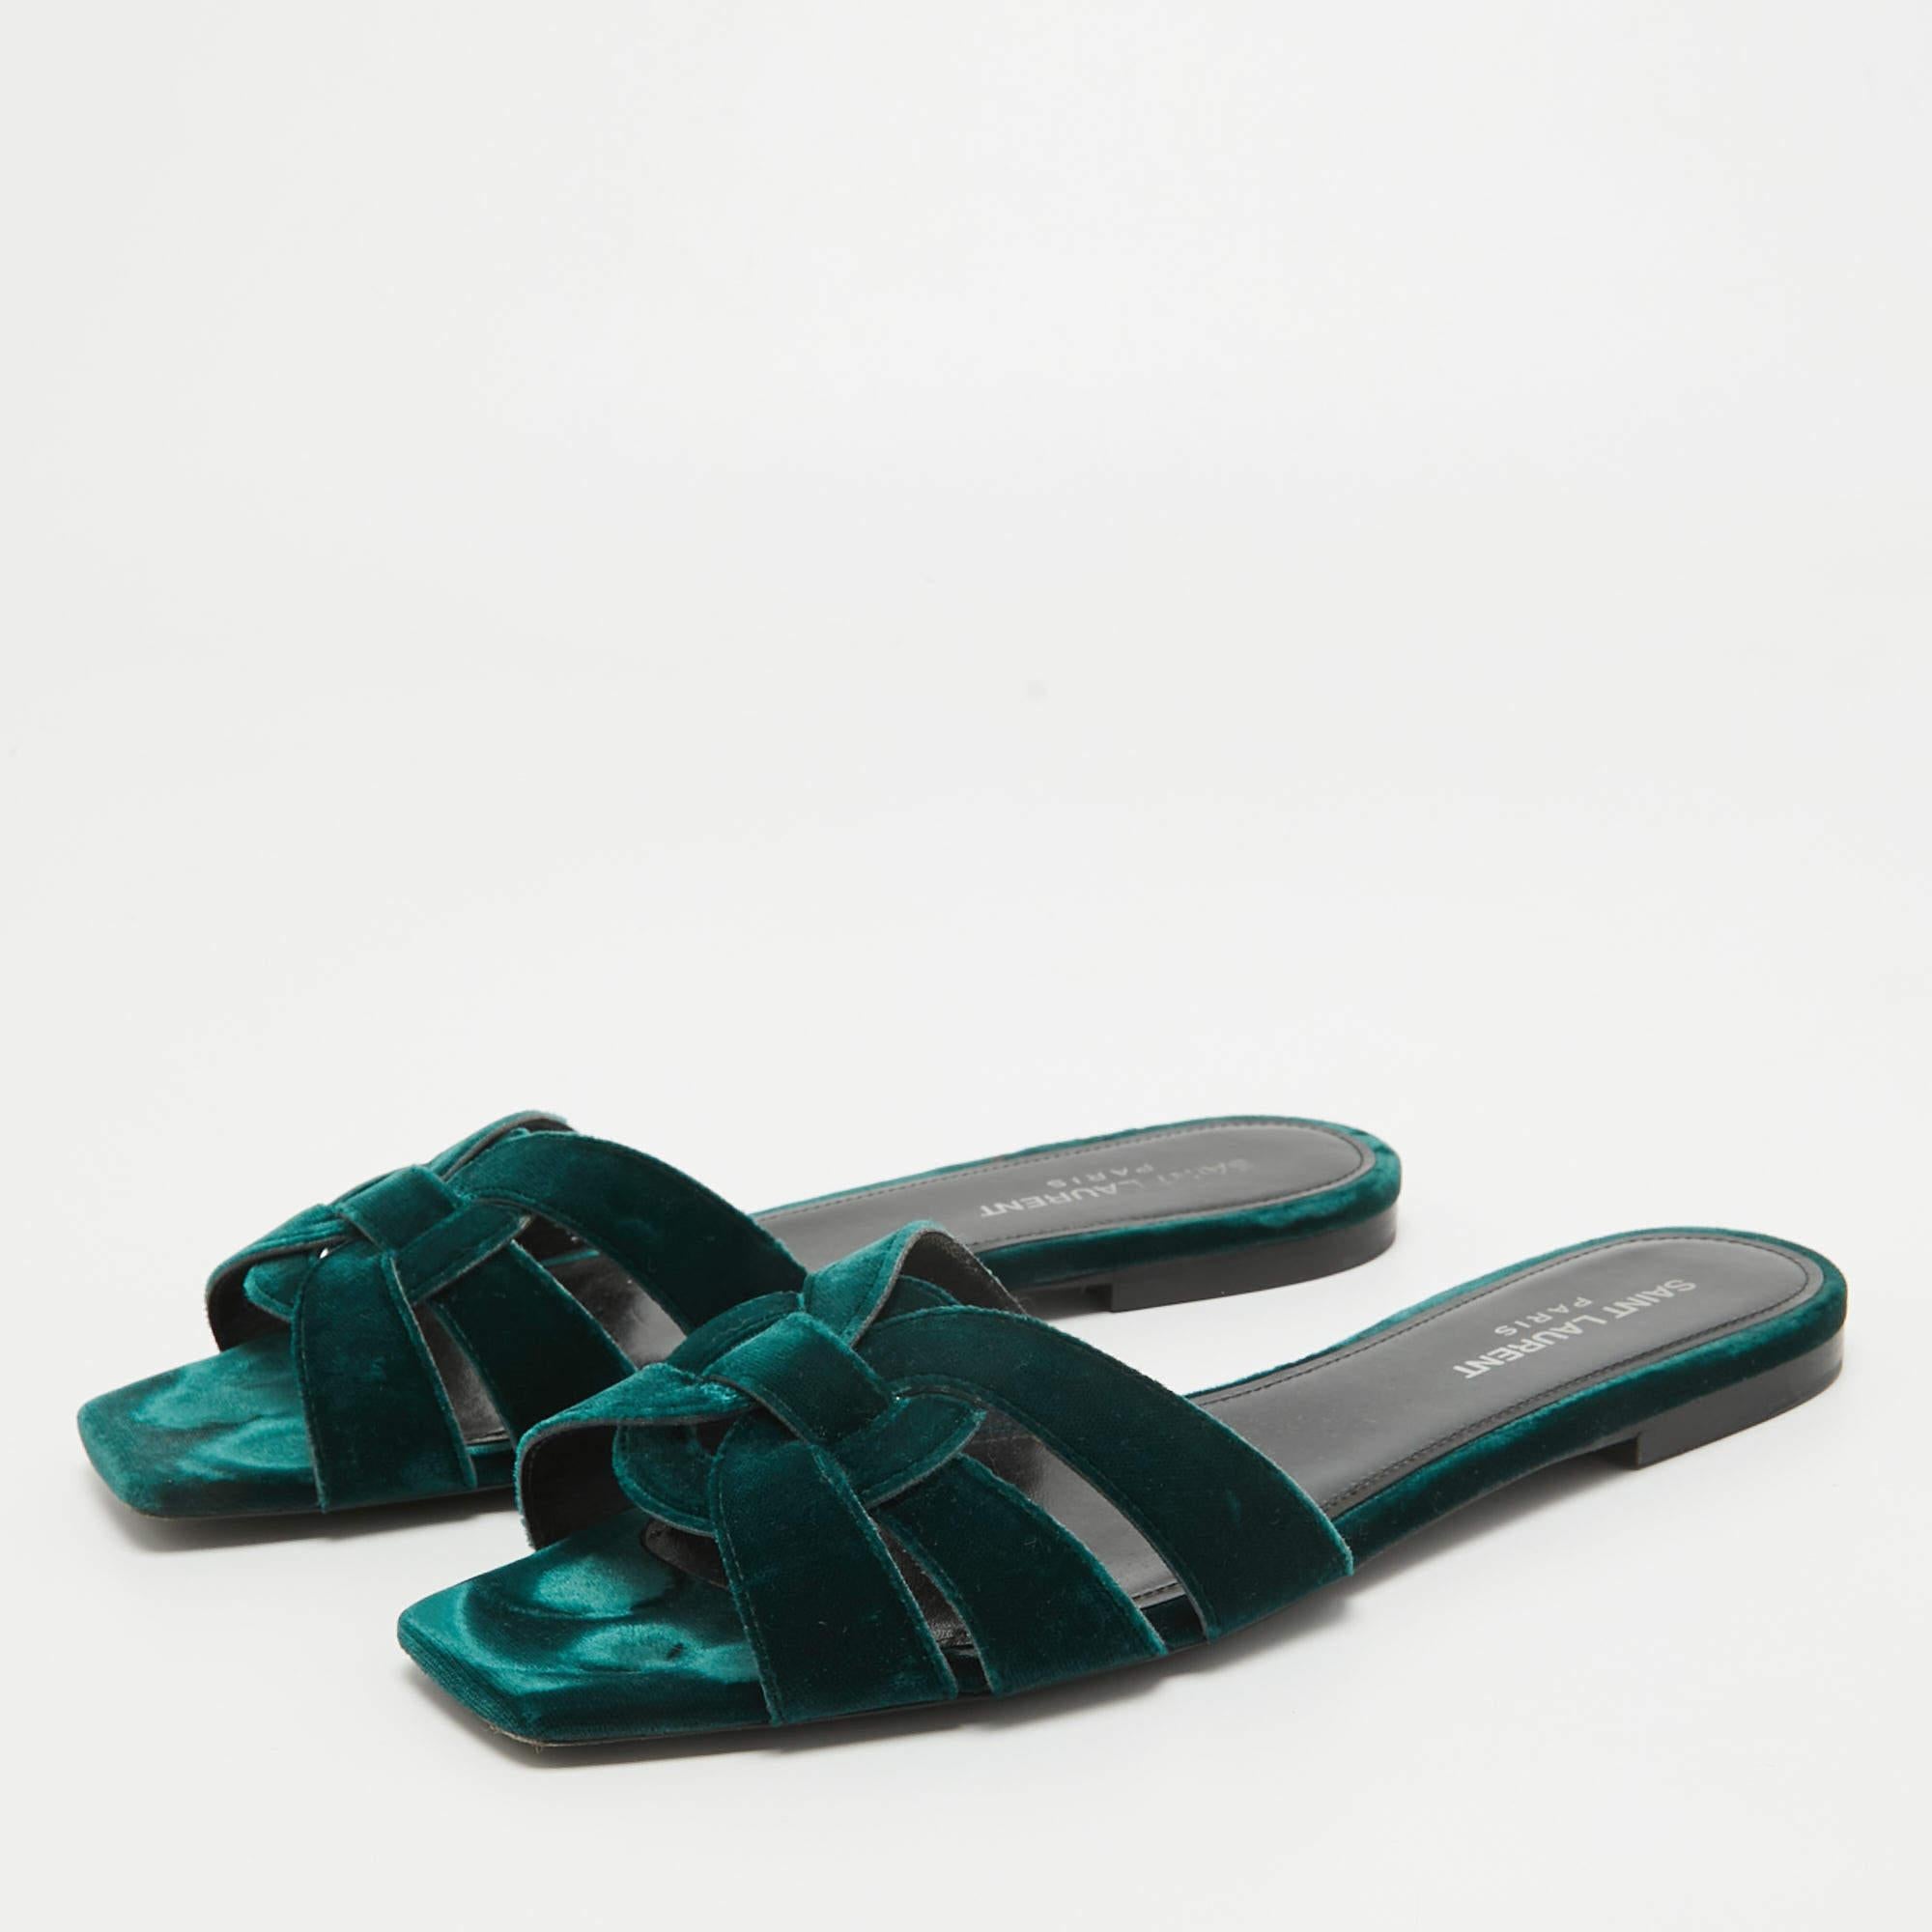 Encadrez vos pieds avec ces sandales plates YSL. Créées à partir des meilleurs matériaux, les chaussures plates sont parfaites avec des ourlets courts, midi et maxi.

